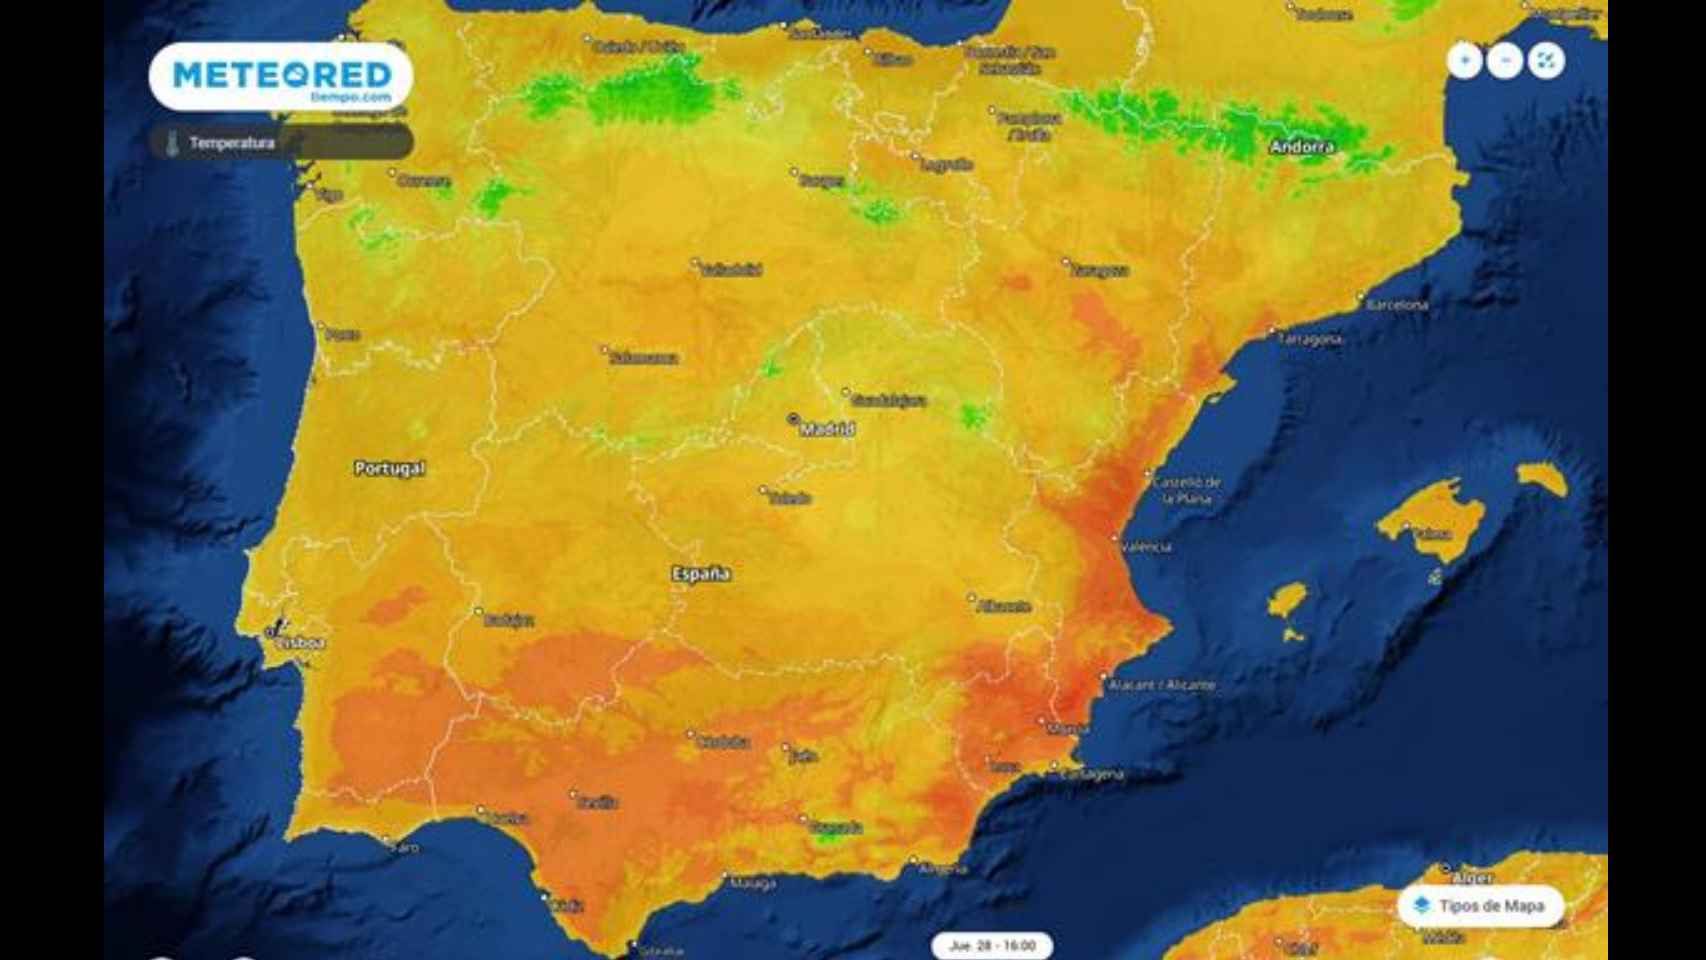 Mapa de calor de la Península Ibérica durante el episodio de altas temperaturas. Meteored.